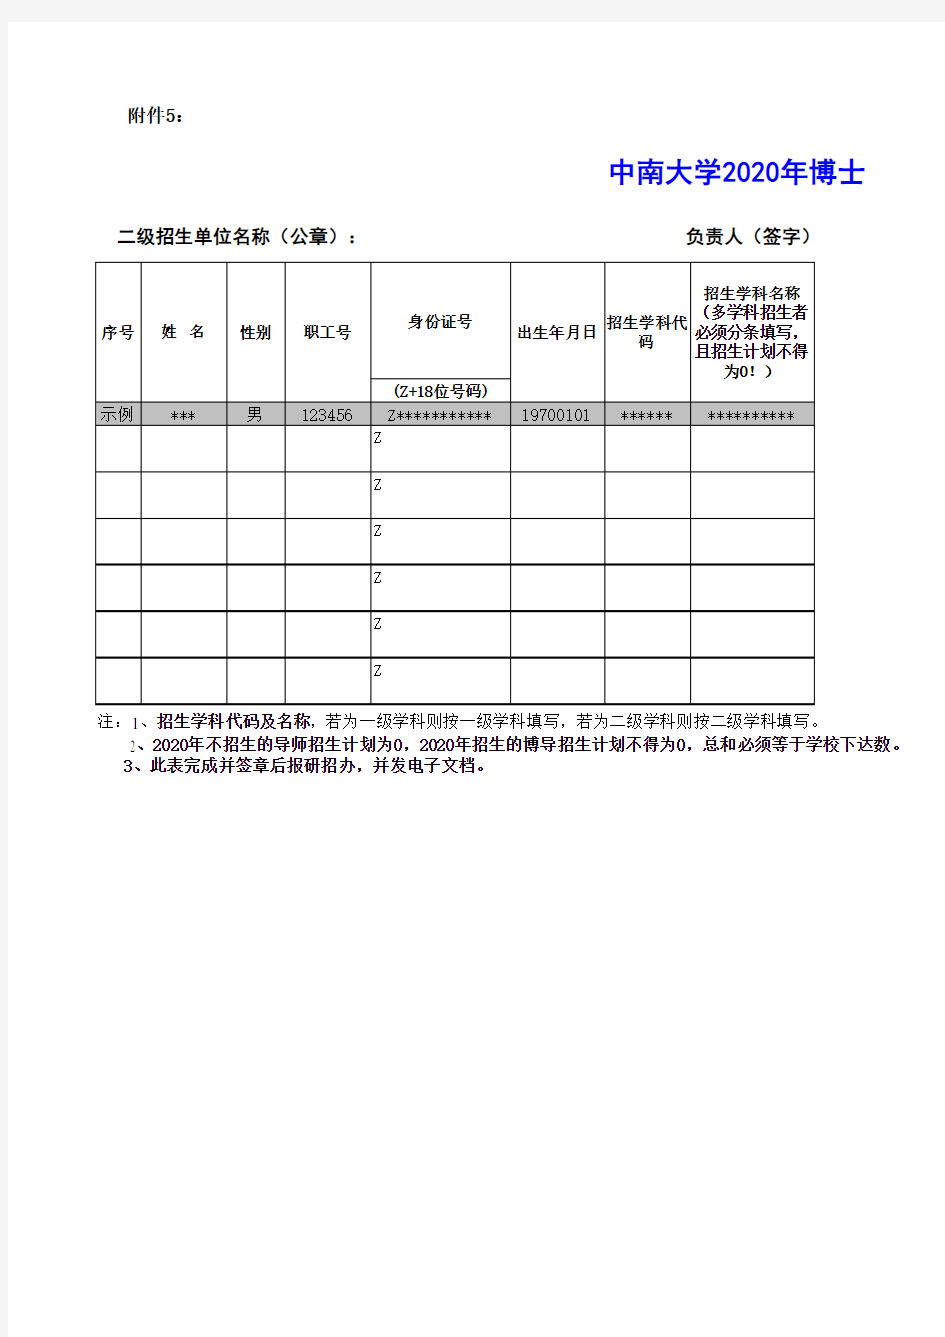 中南大学2020年博士生指导教师招生资格认定通过名单汇总表